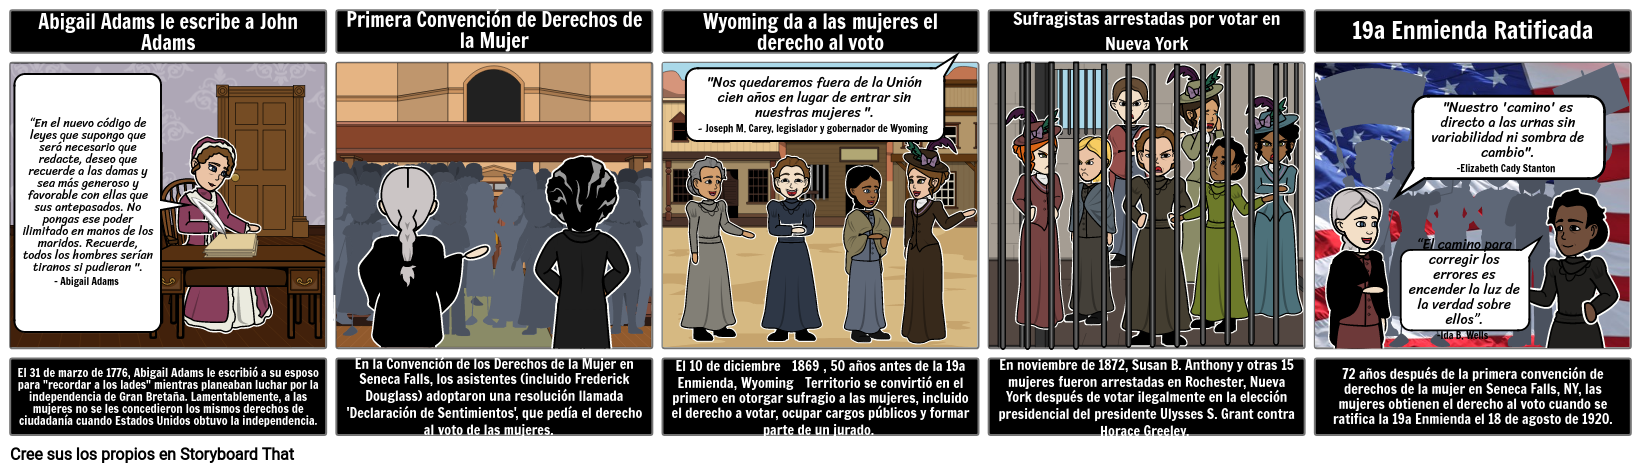 Camino a la 19a Enmienda - Derecho de las mujeres al voto, Storyboard de 4 